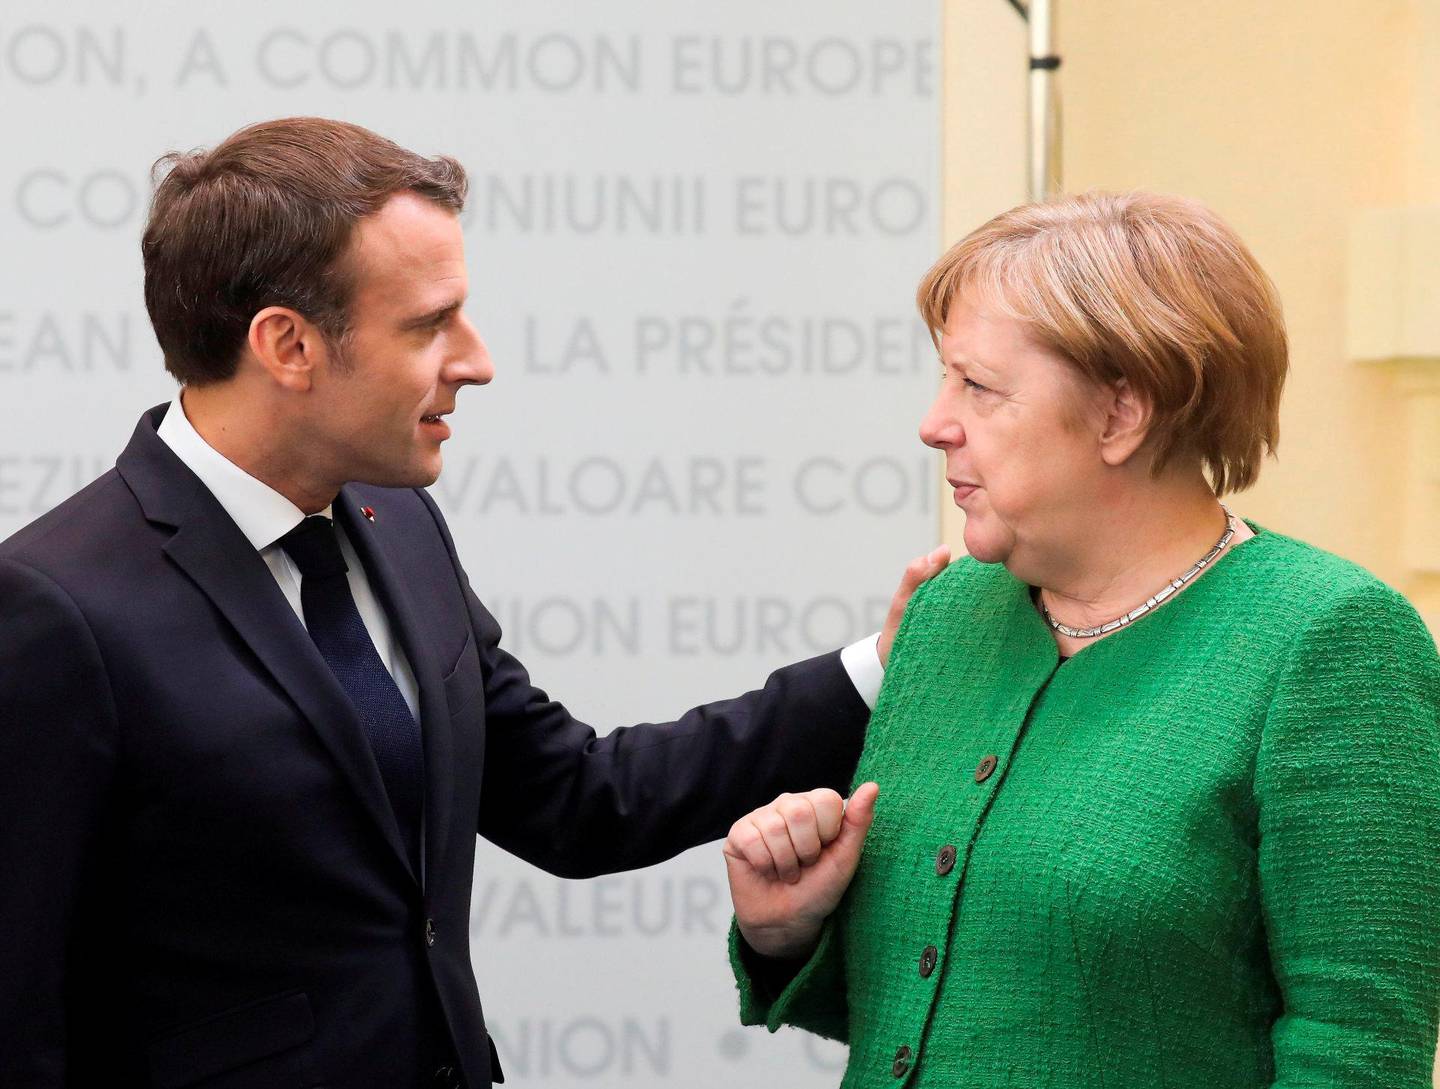 FÅR BESØK: Både Emmanuel Macron og Angela Merkel får besøk av Boris Johnson denne uka. FOTO: NTB SCANPIX